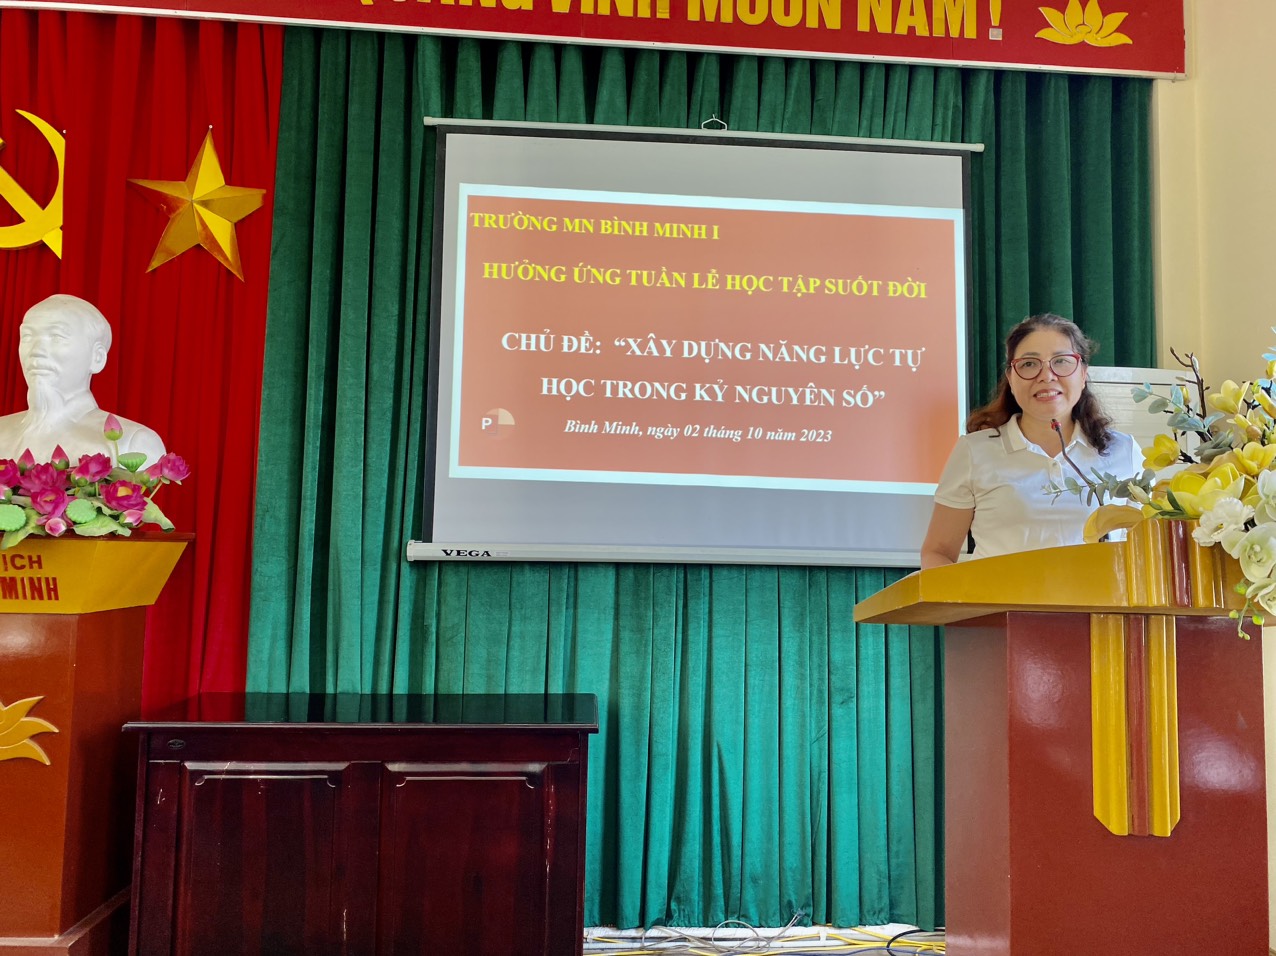 Đ/c Phạm Thị Linh - Bí thư chi bộ - Hiệu trưởng phát động hưởng ứng tuần lễ học tập suốt đời năm 2023